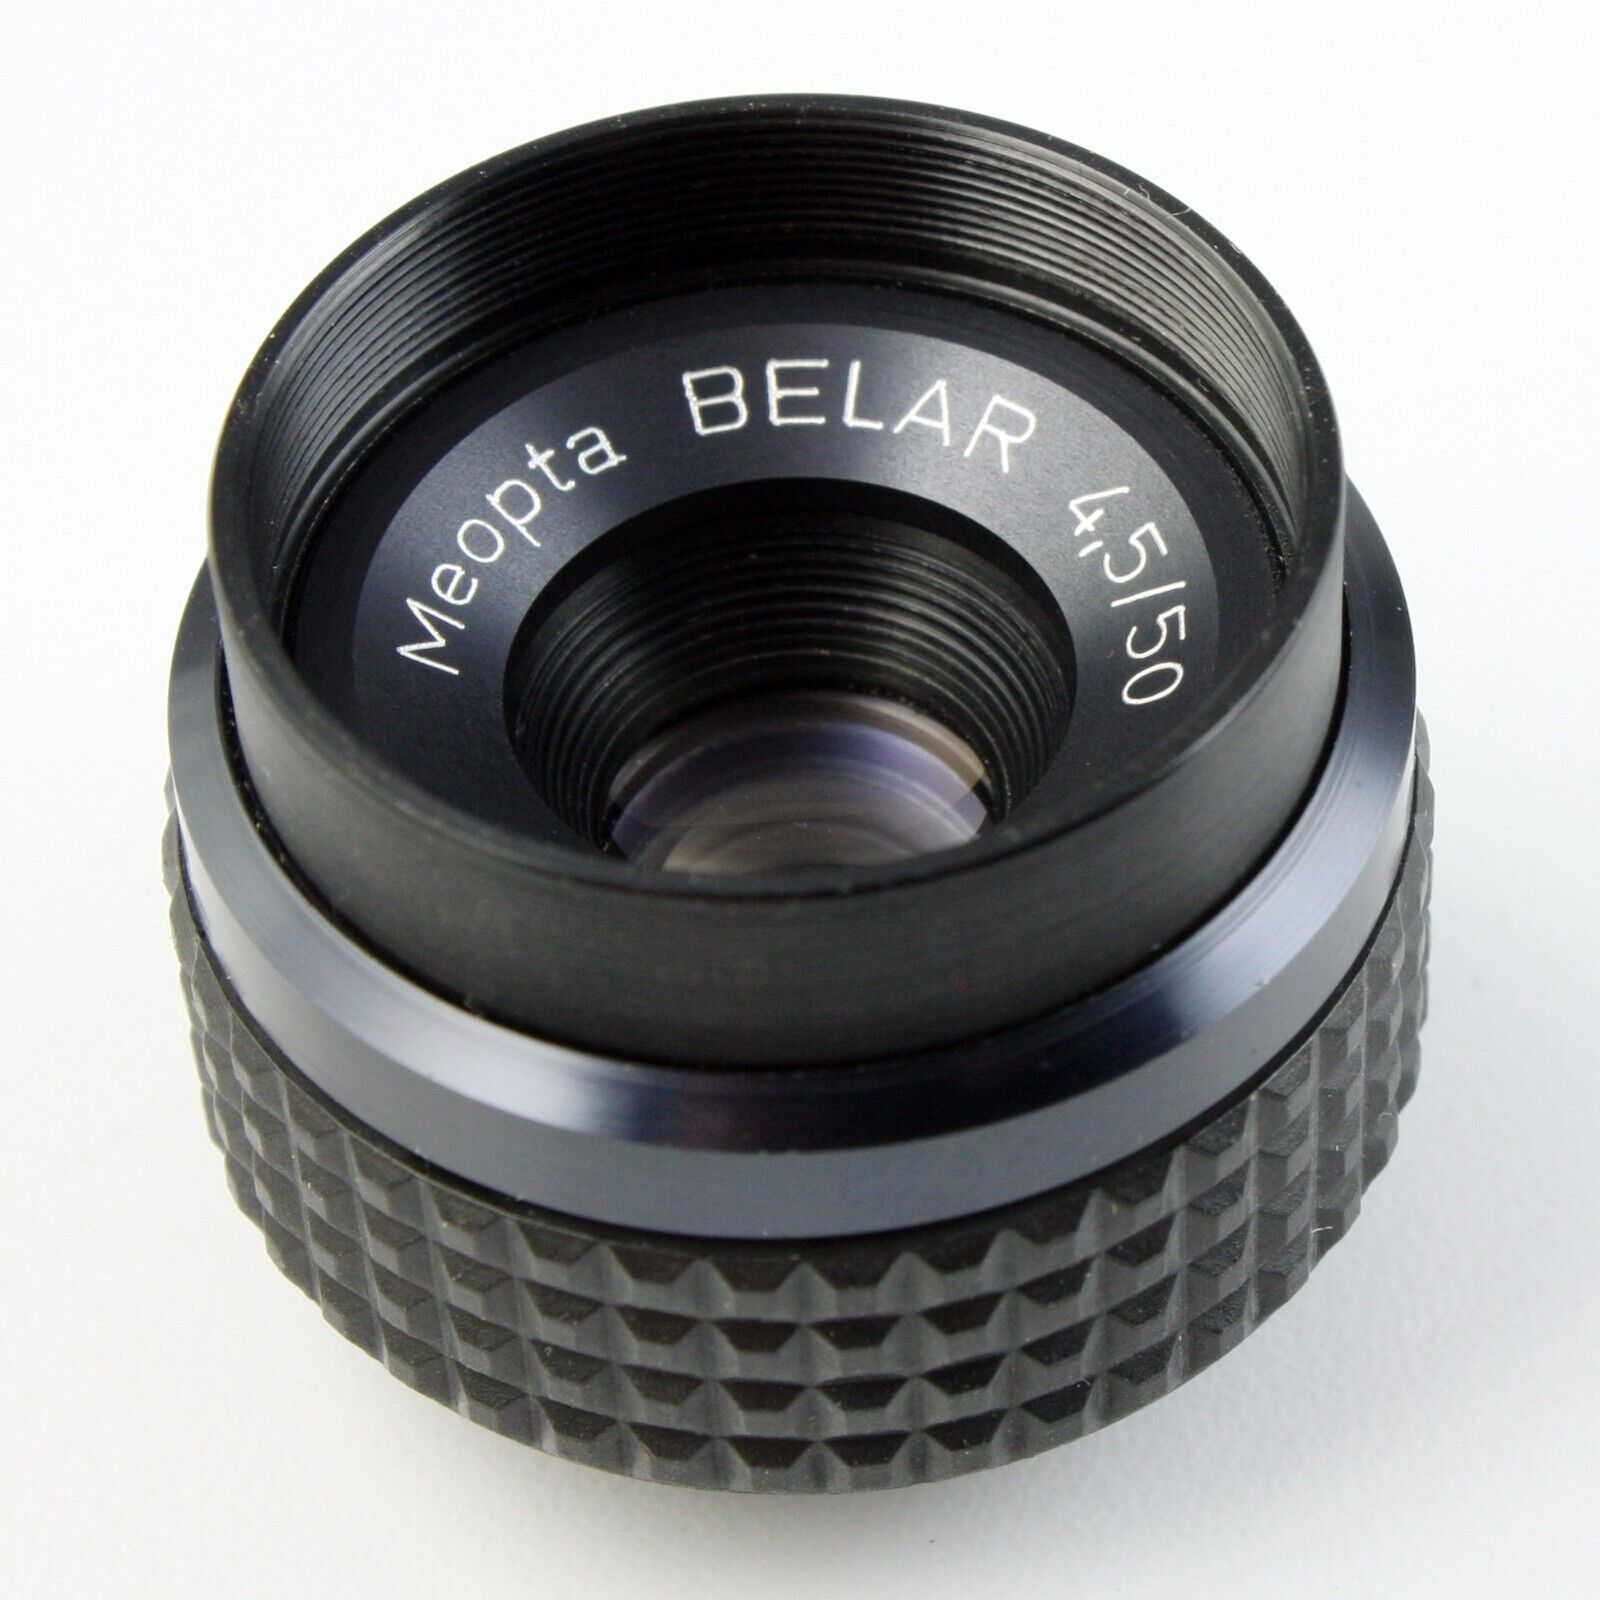 Meopta Belar 50mm f/4.5 Enlarging Lens + 23mm Mount Thread